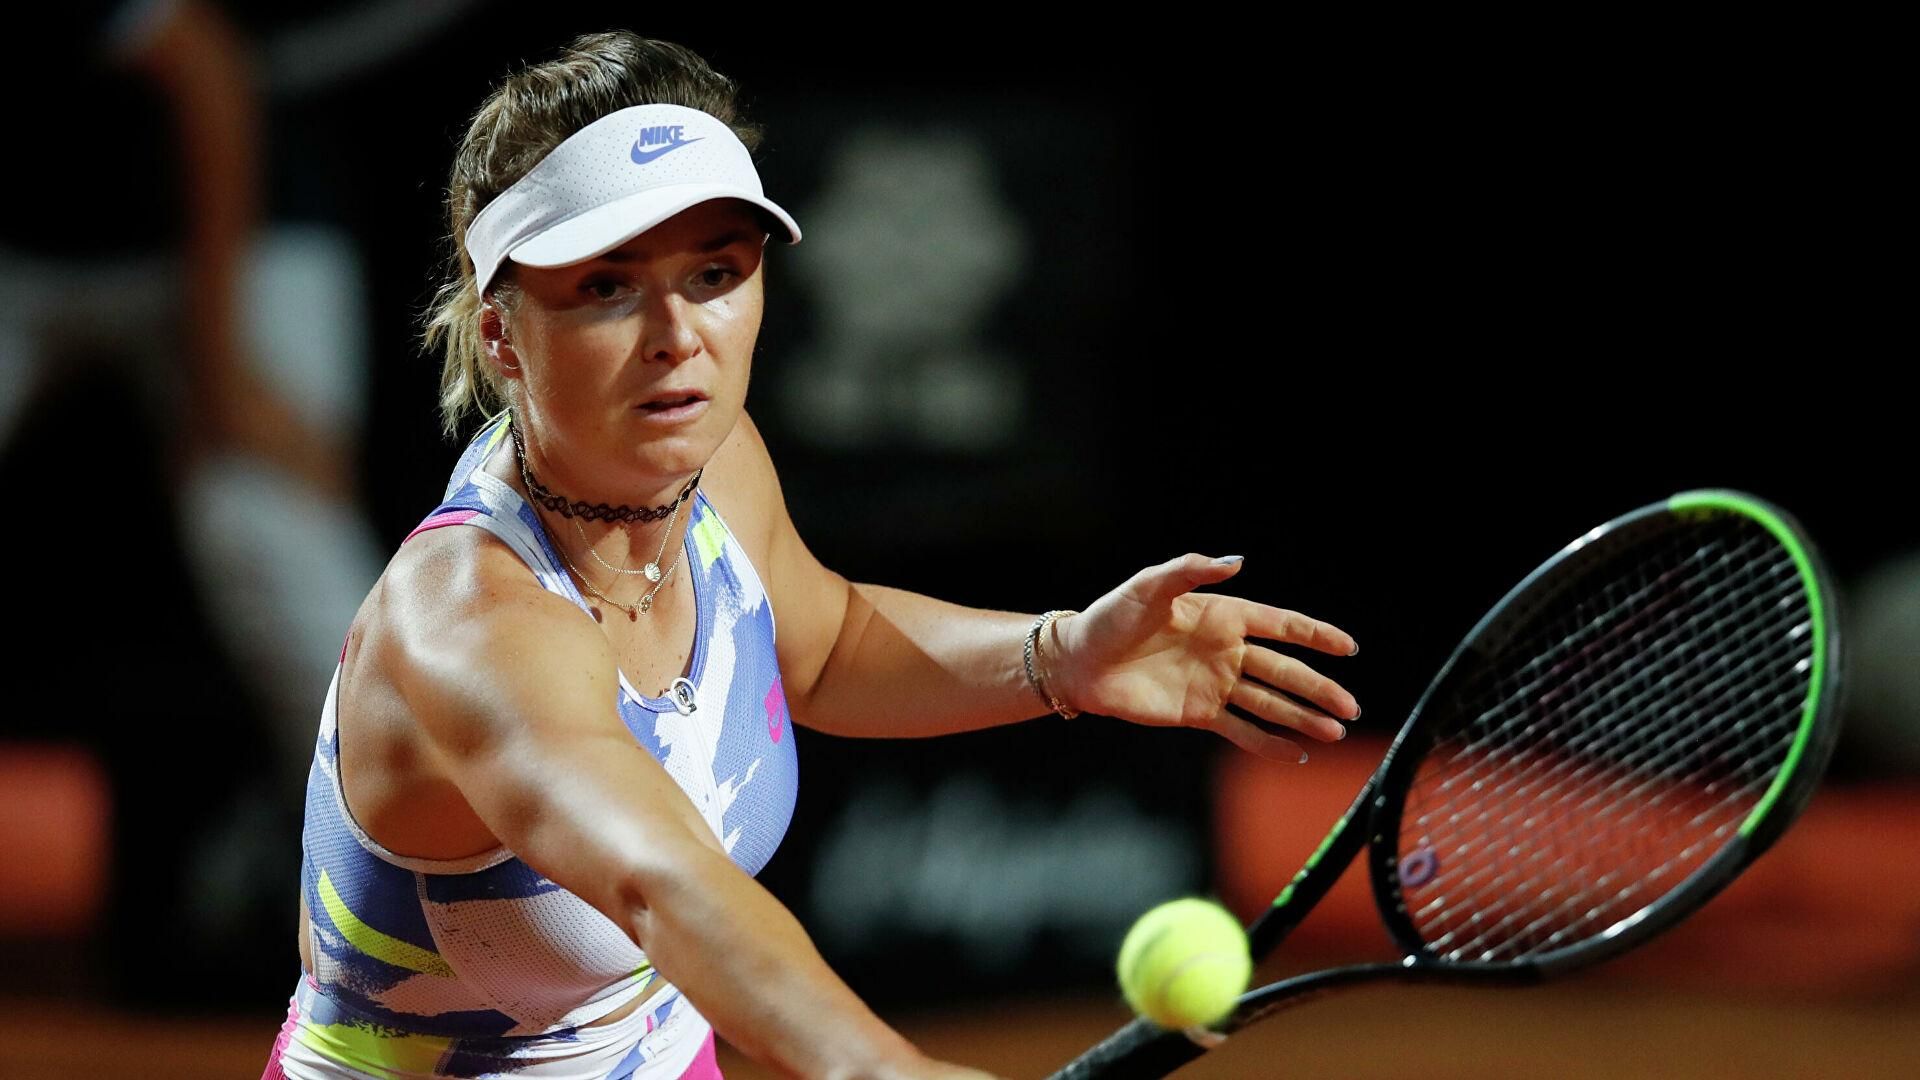 Свитолина выполнила один из лучших ударов на Australian Open: видео